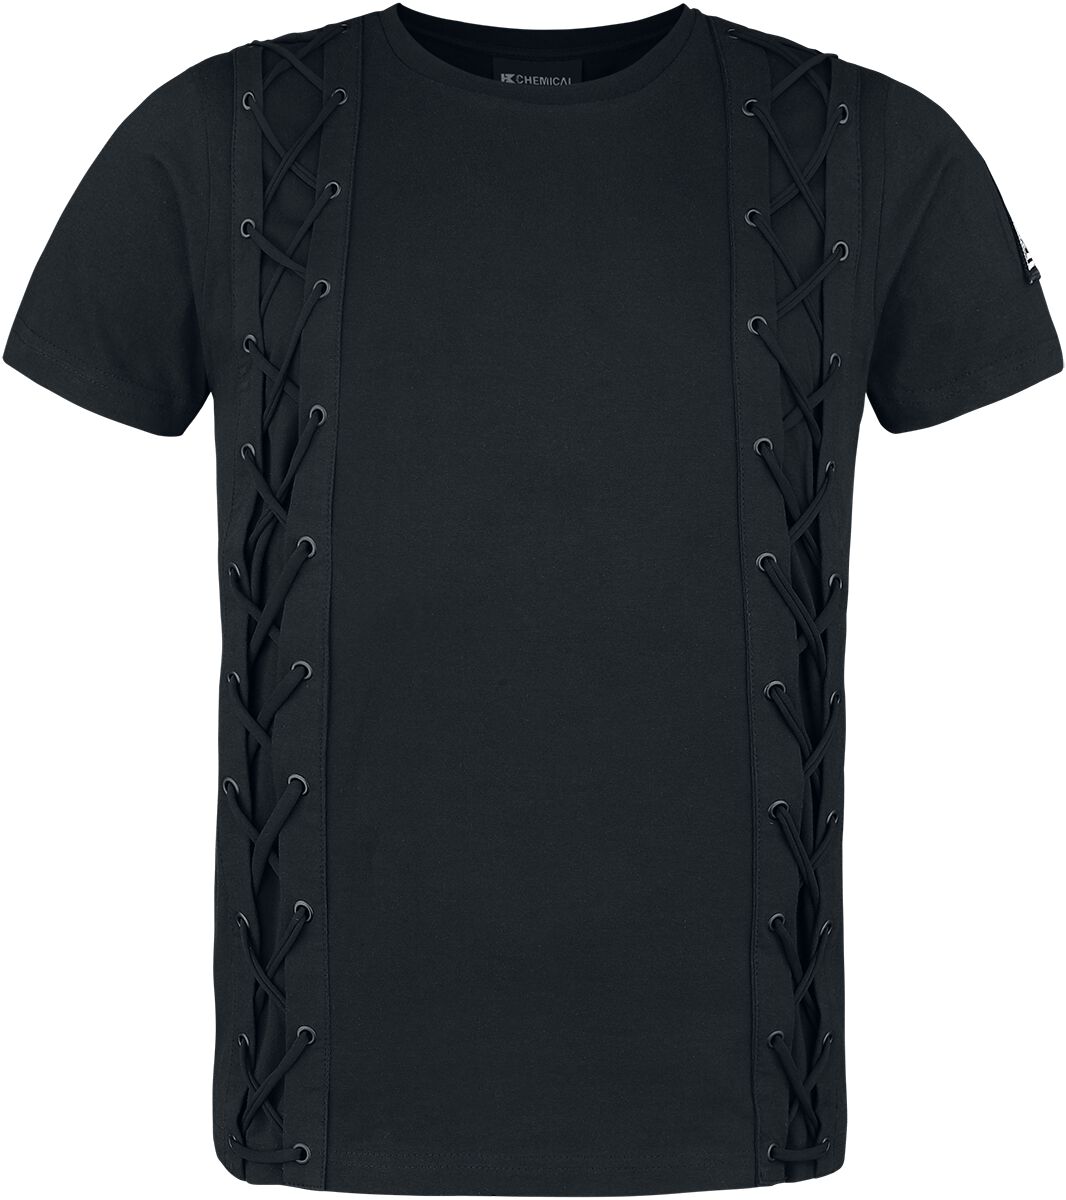 Chemical Black - Gothic T-Shirt - Gunner Top Mens Black - S bis 4XL - für Männer - Größe L - schwarz